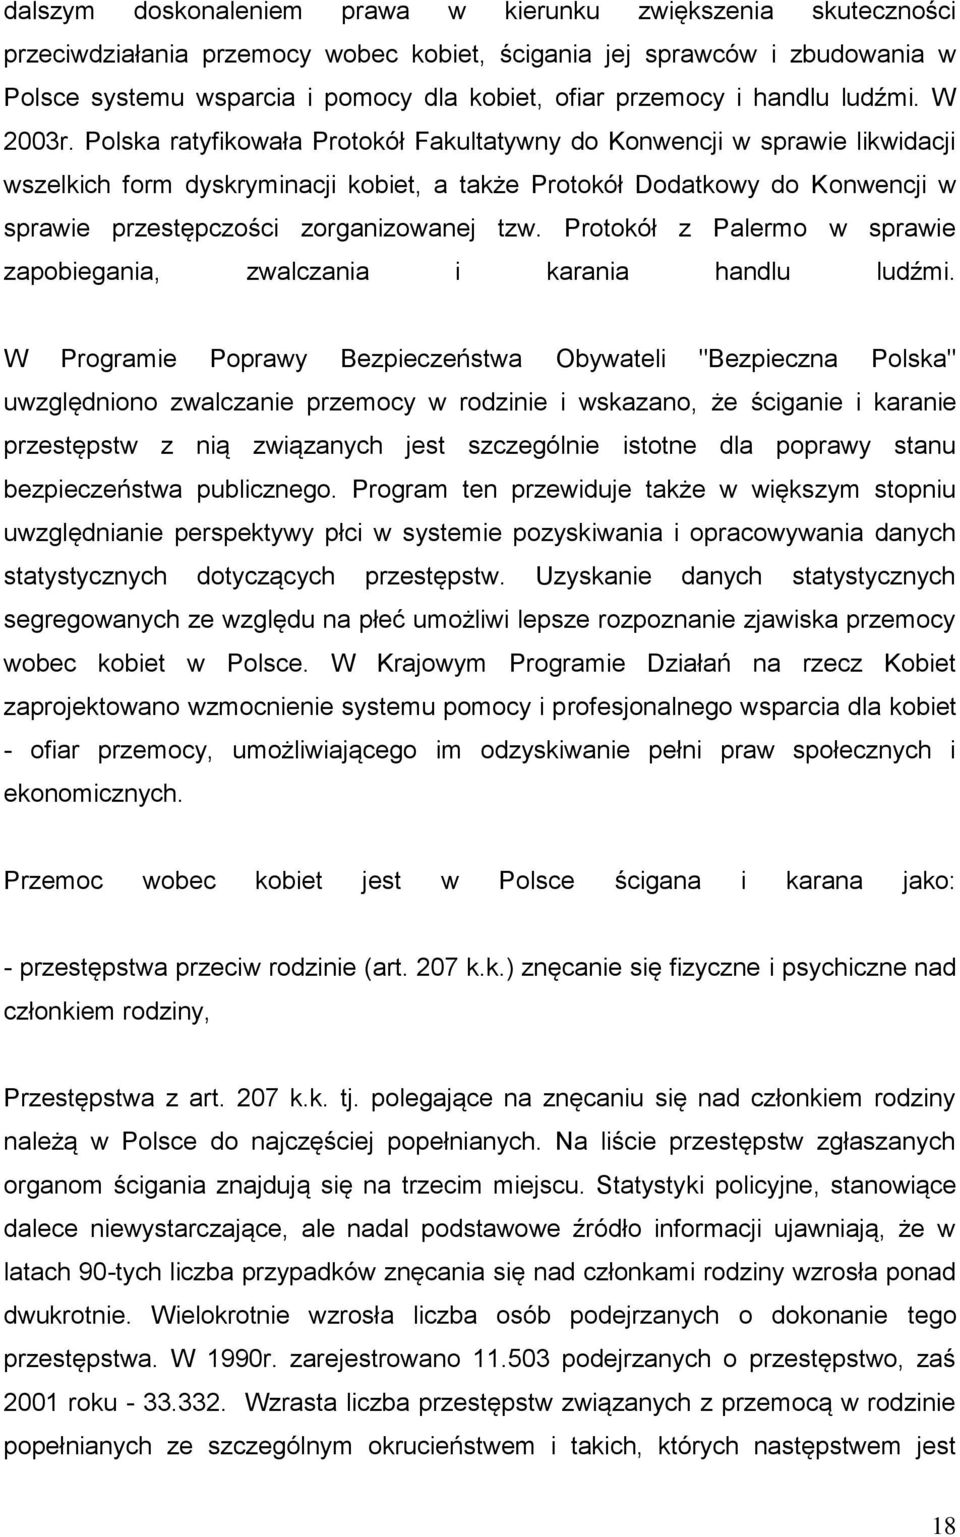 Polska ratyfikowała Protokół Fakultatywny do Konwencji w sprawie likwidacji wszelkich form dyskryminacji kobiet, a także Protokół Dodatkowy do Konwencji w sprawie przestępczości zorganizowanej tzw.